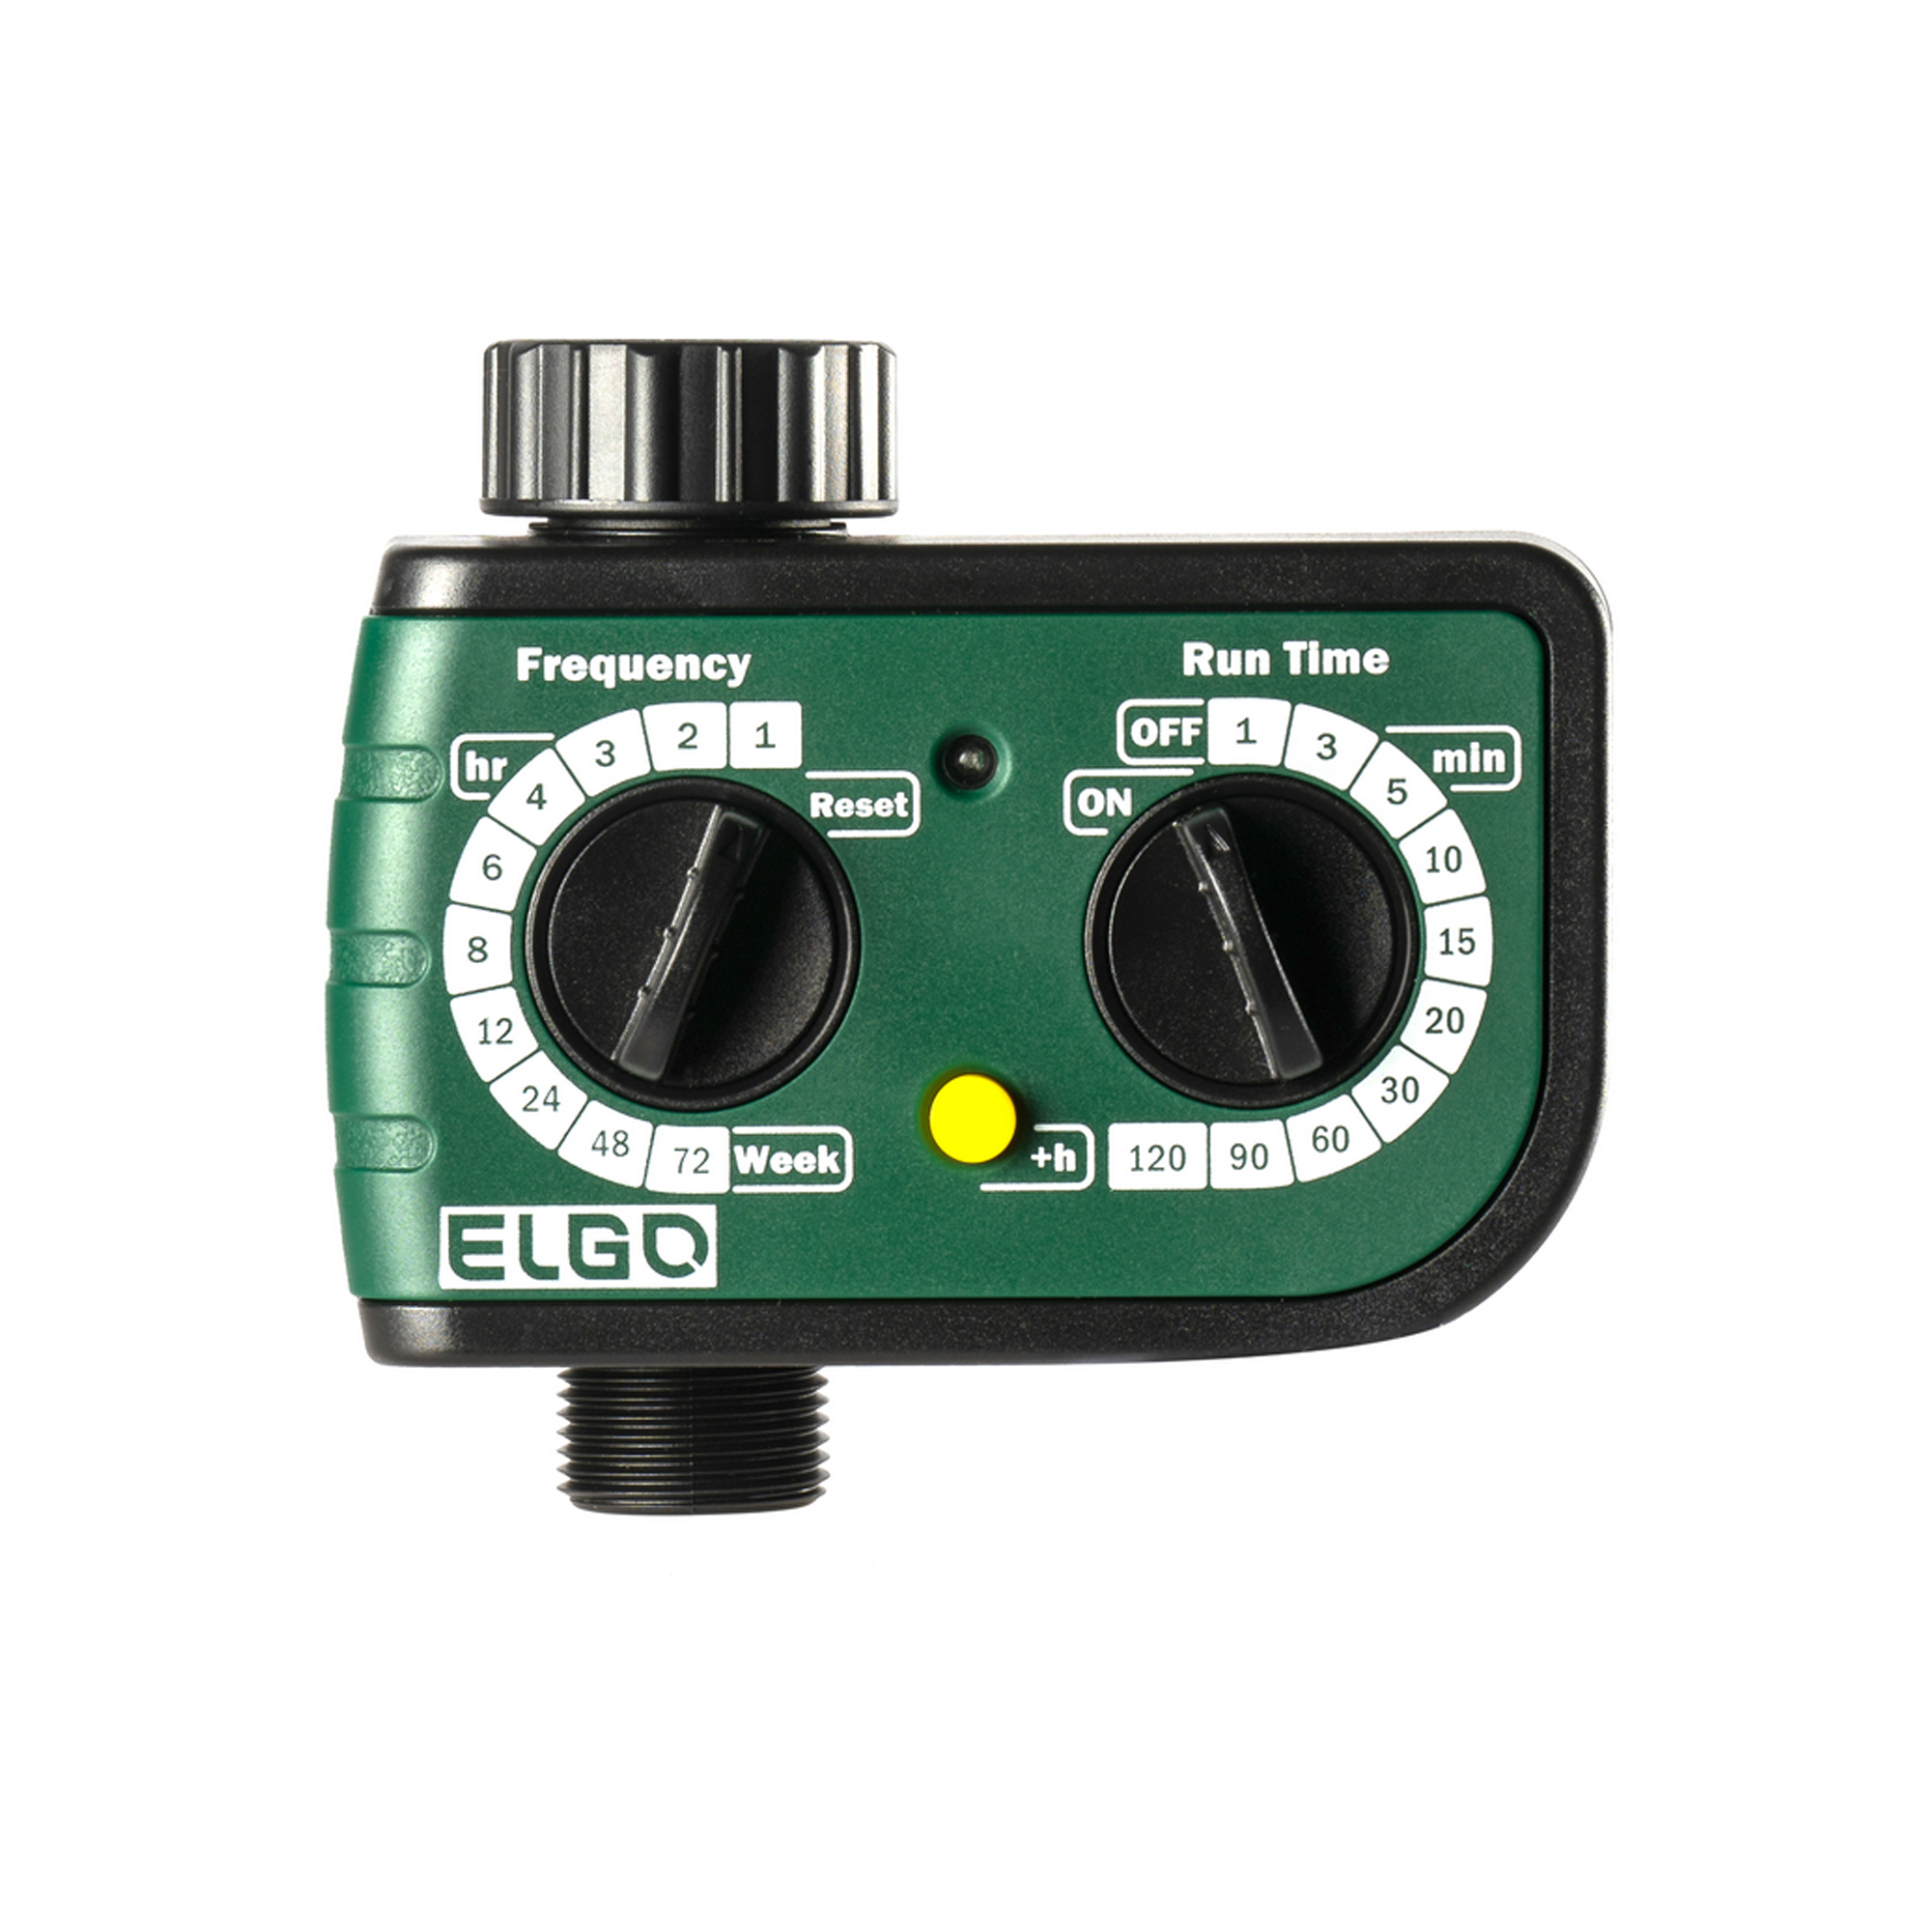 Elektronische Bewässerungsuhr für Wasserhahn 'Elgo WT218' + product picture